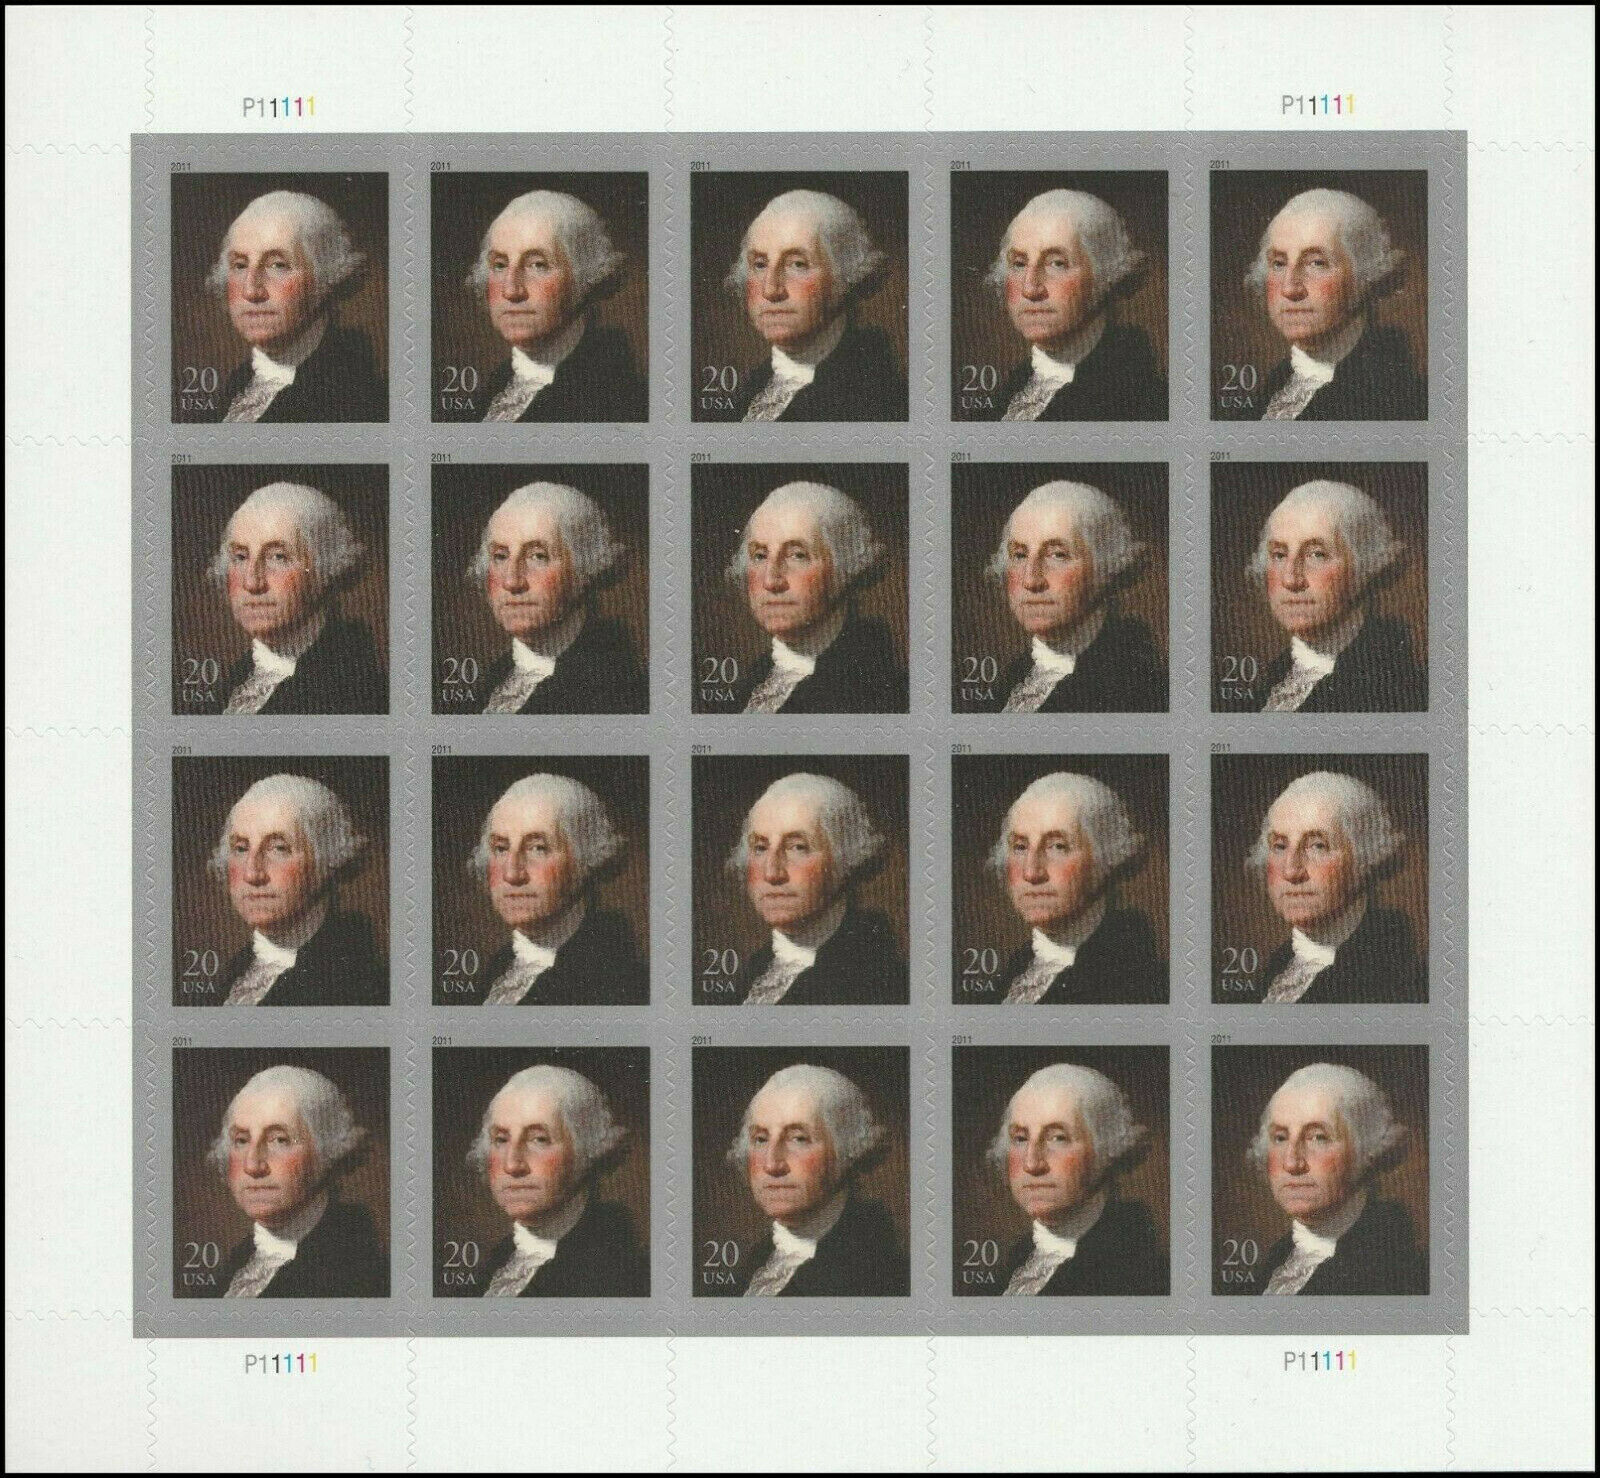 George Washington Usps Sheet Of 20 Scott # 4504 Mint Never Hinged Issued 4-2011